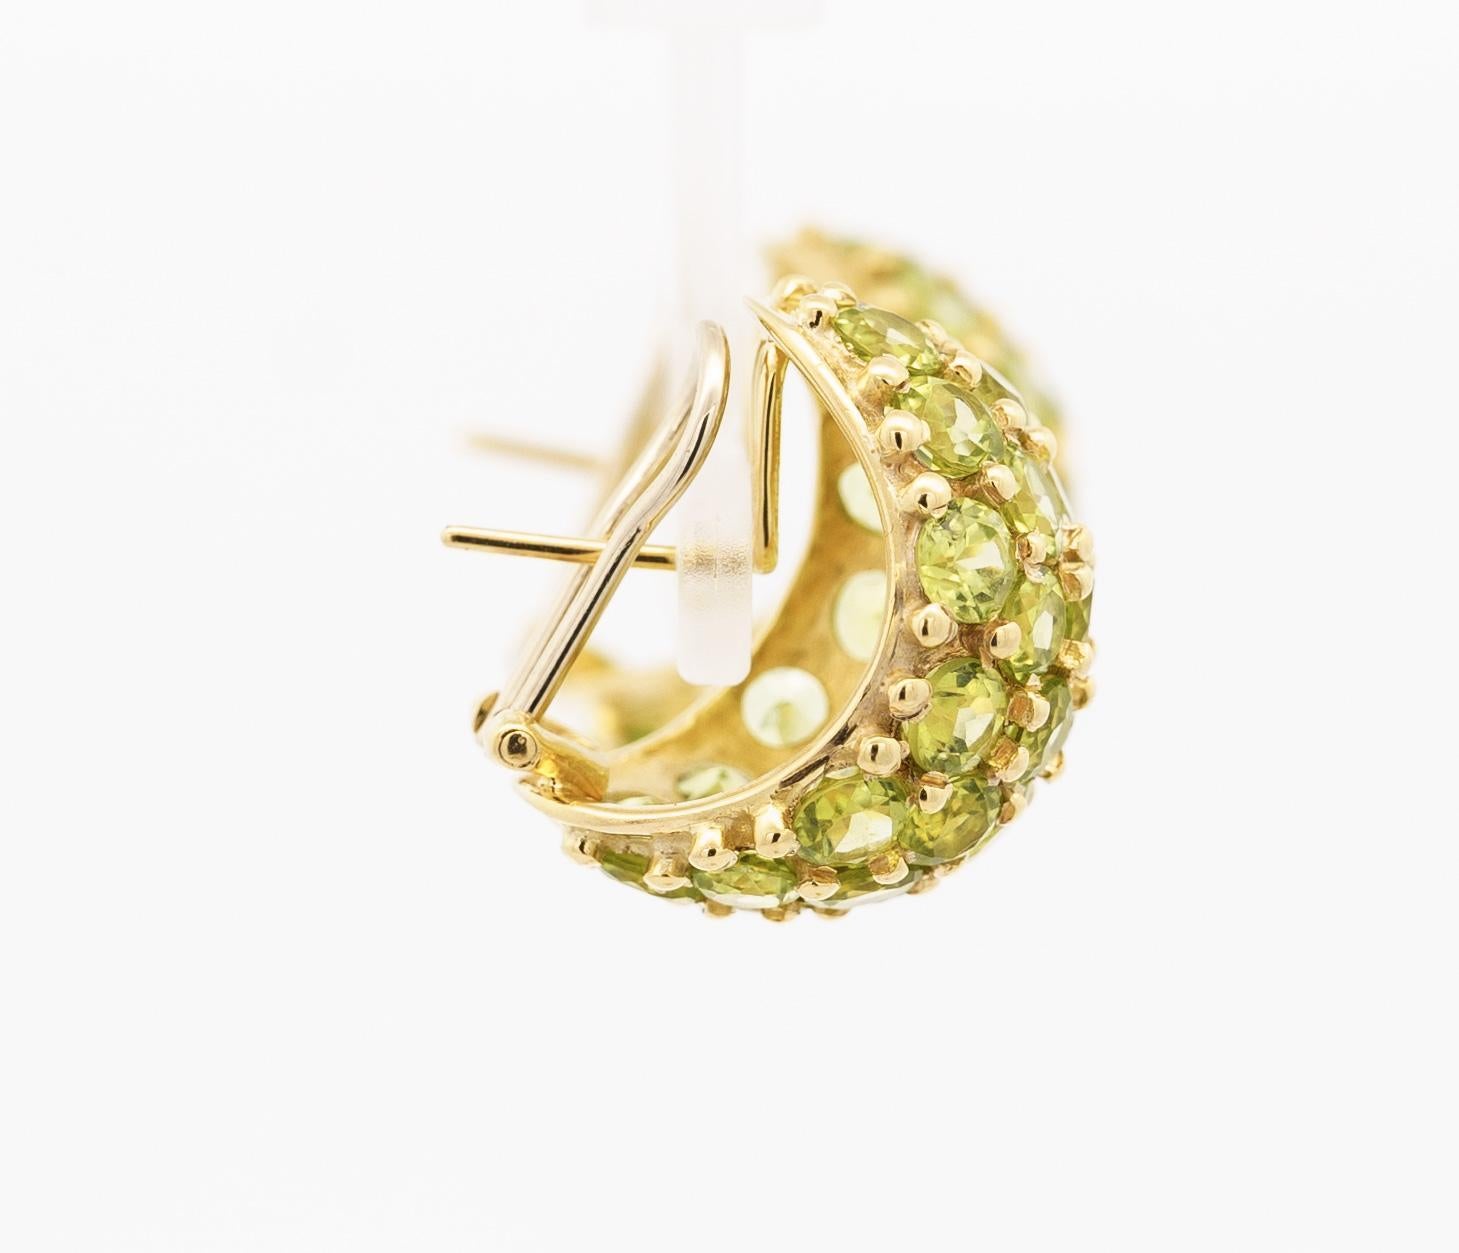 Vintage Peridot Ring/Earring Set 18K Yellow Gold Jewelry. 

Cet ensemble de bijoux vintage contient une paire de boucles d'oreilles et une bague. Les deux pièces sont fabriquées en or jaune 18 carats et les pierres précieuses sont serties à l'aide